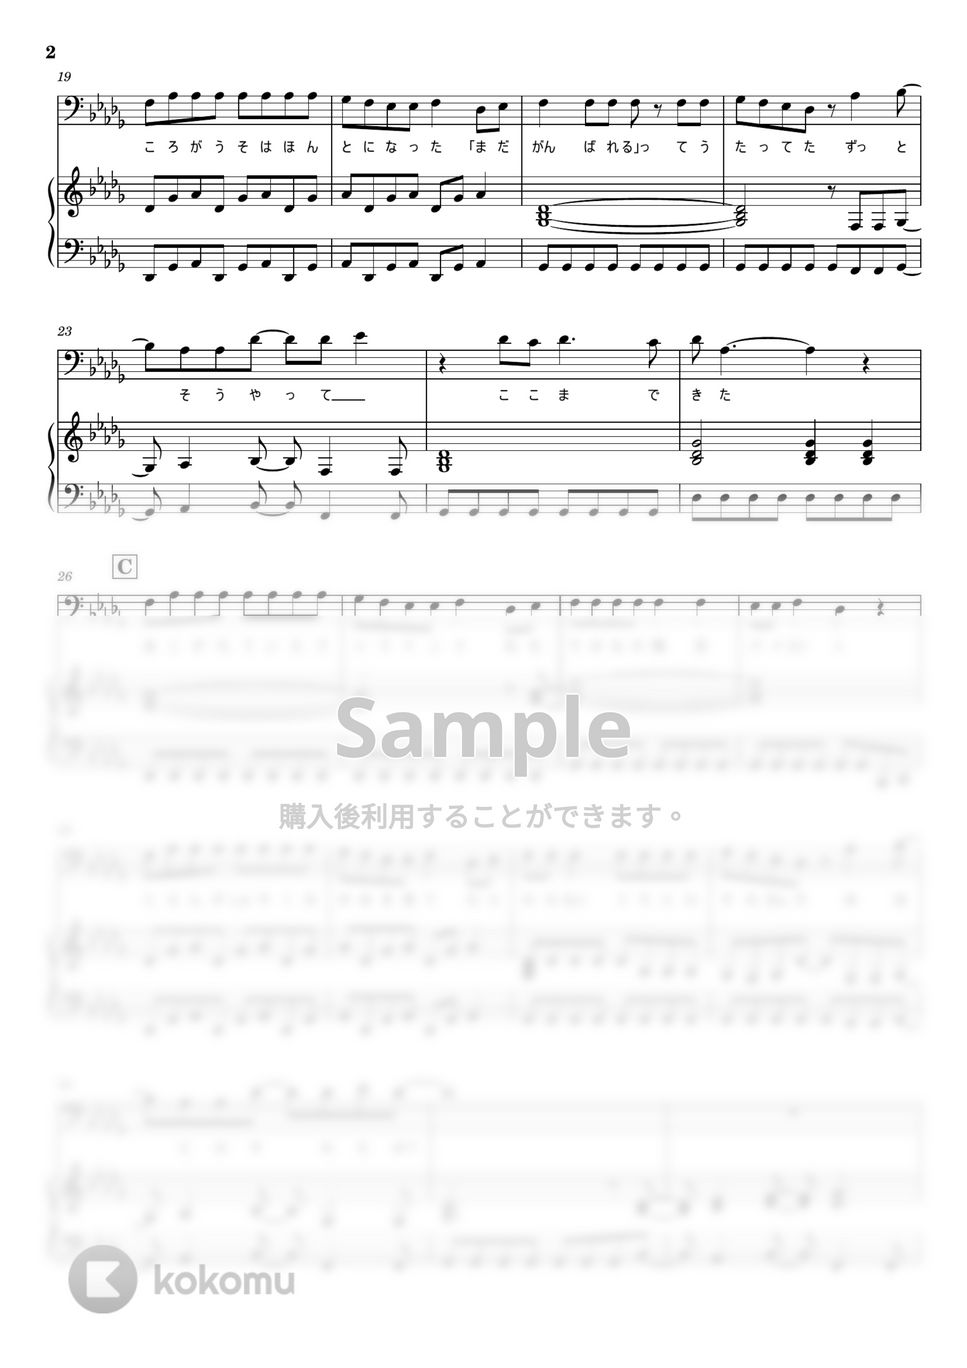 BUMP OF CHICKEN - バトルクライ (ピアノ弾き語り) by otyazuke